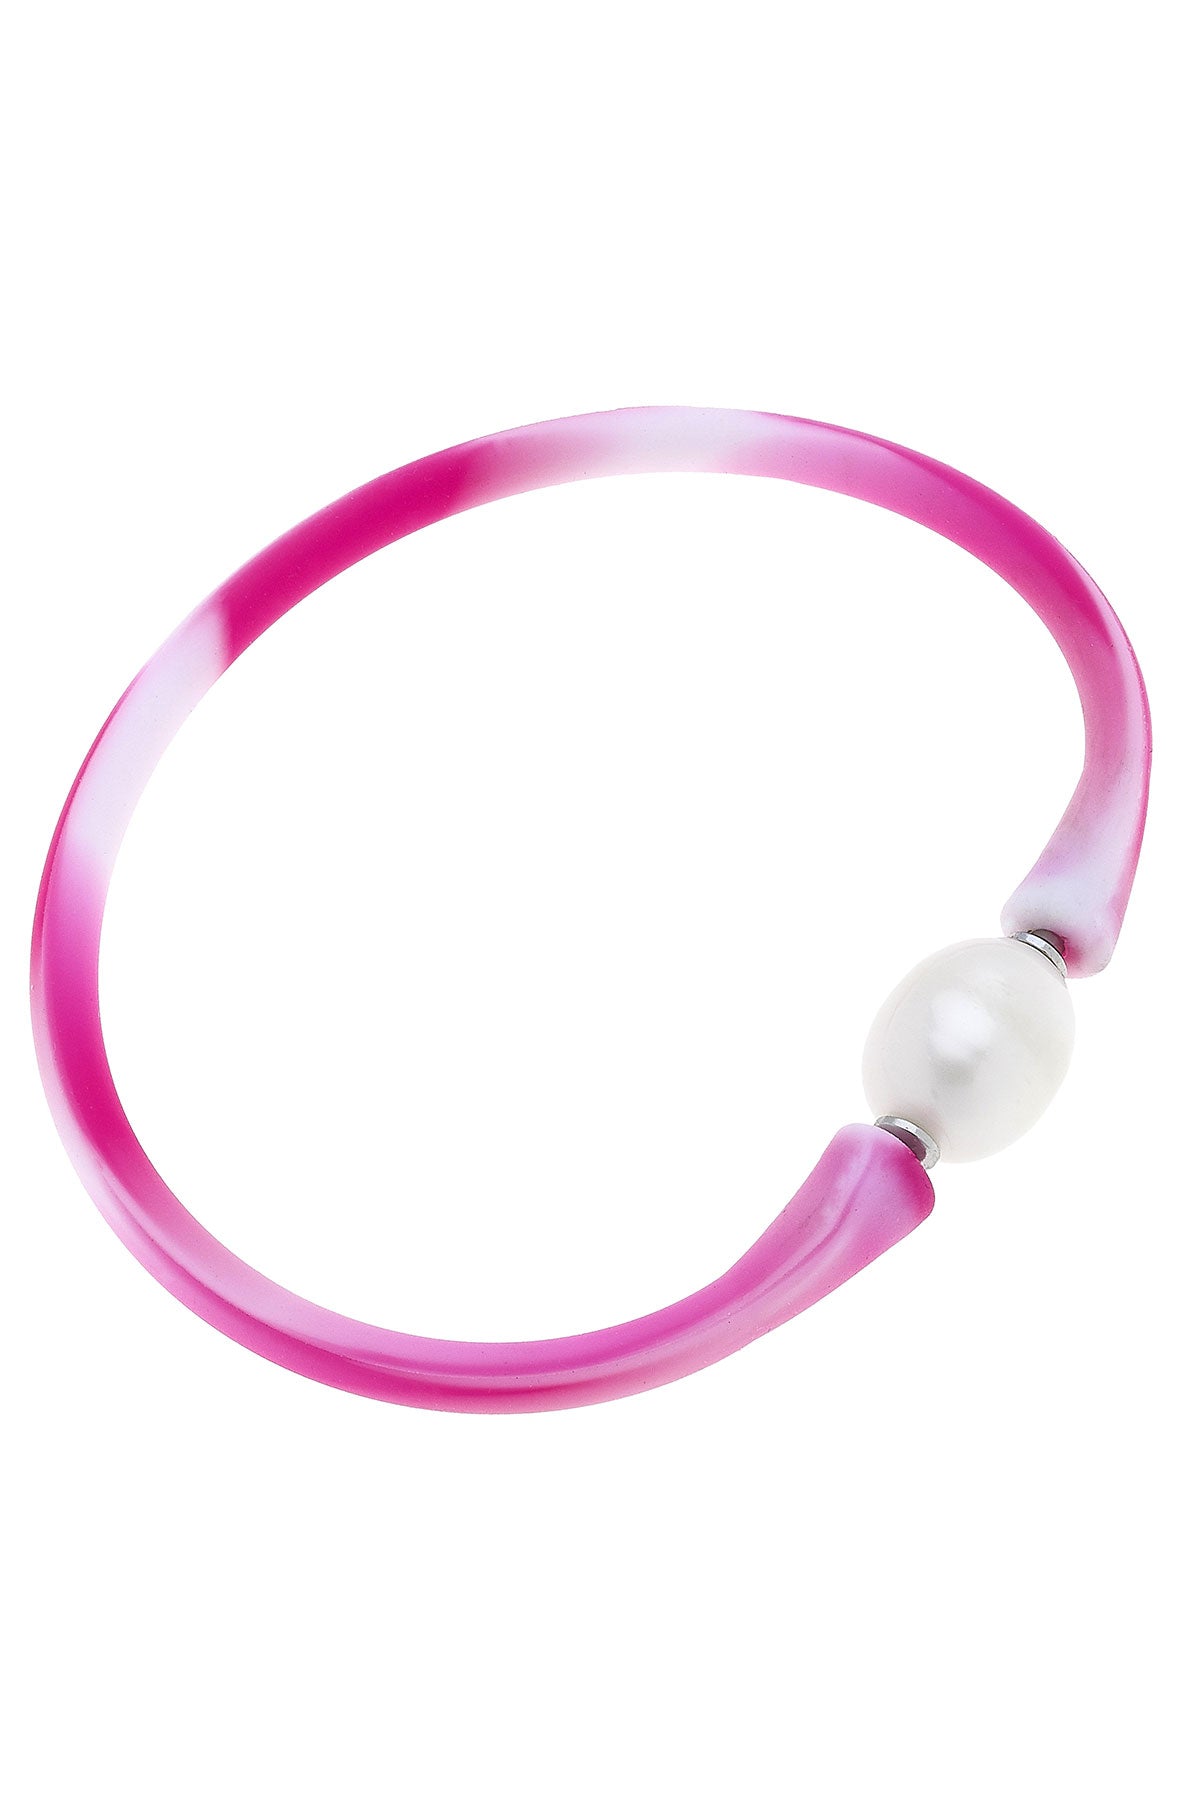 Bali Freshwater Pearl Silicone Bracelet in Tie Die Pink